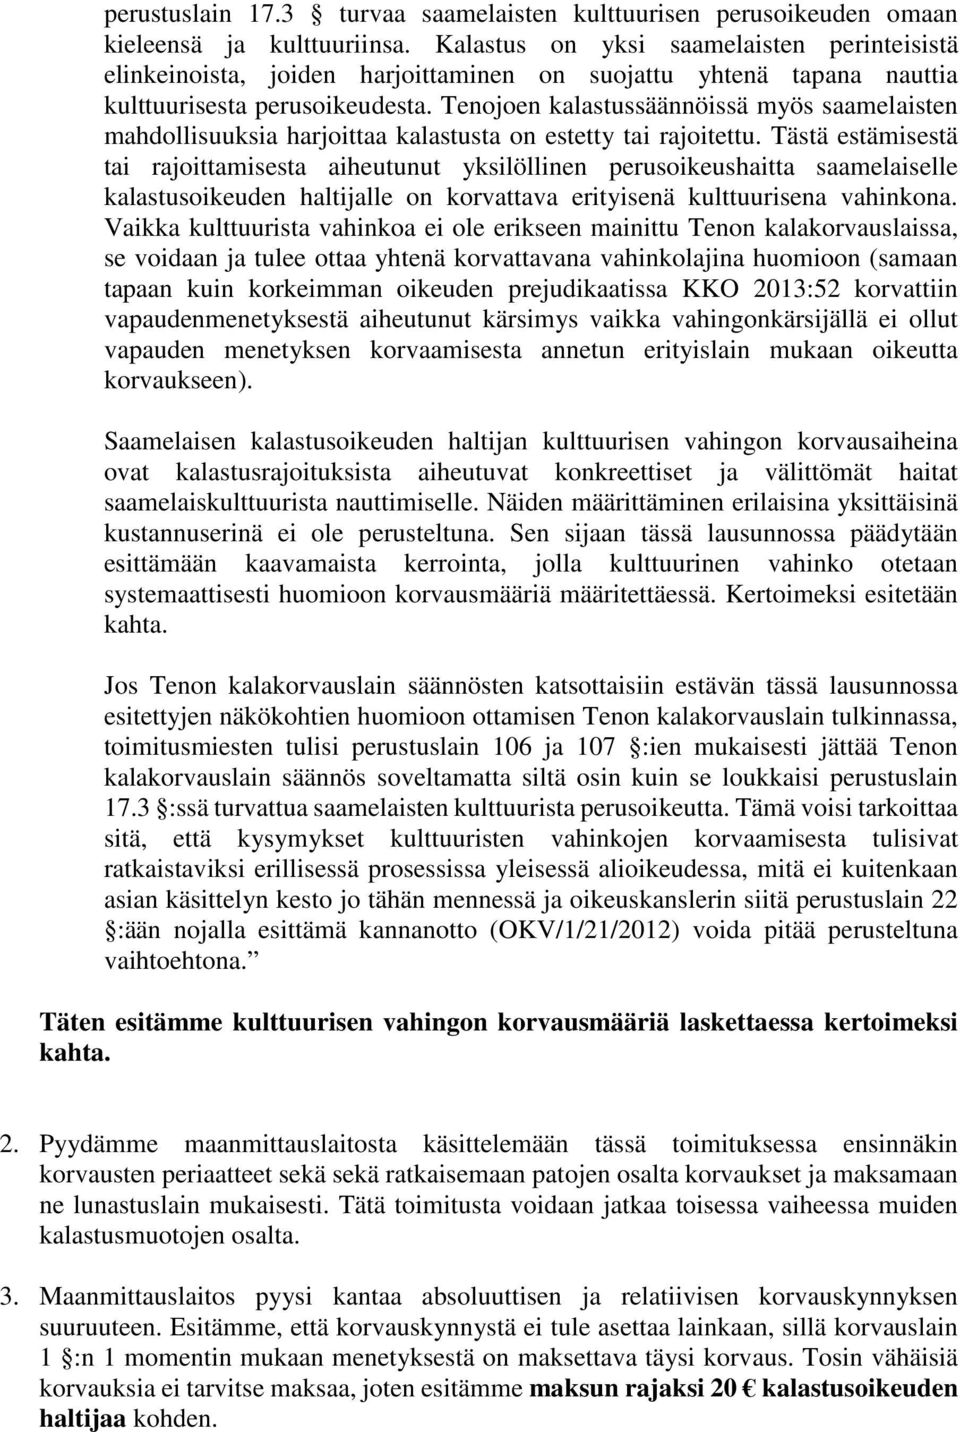 Tenojoen kalastussäännöissä myös saamelaisten mahdollisuuksia harjoittaa kalastusta on estetty tai rajoitettu.